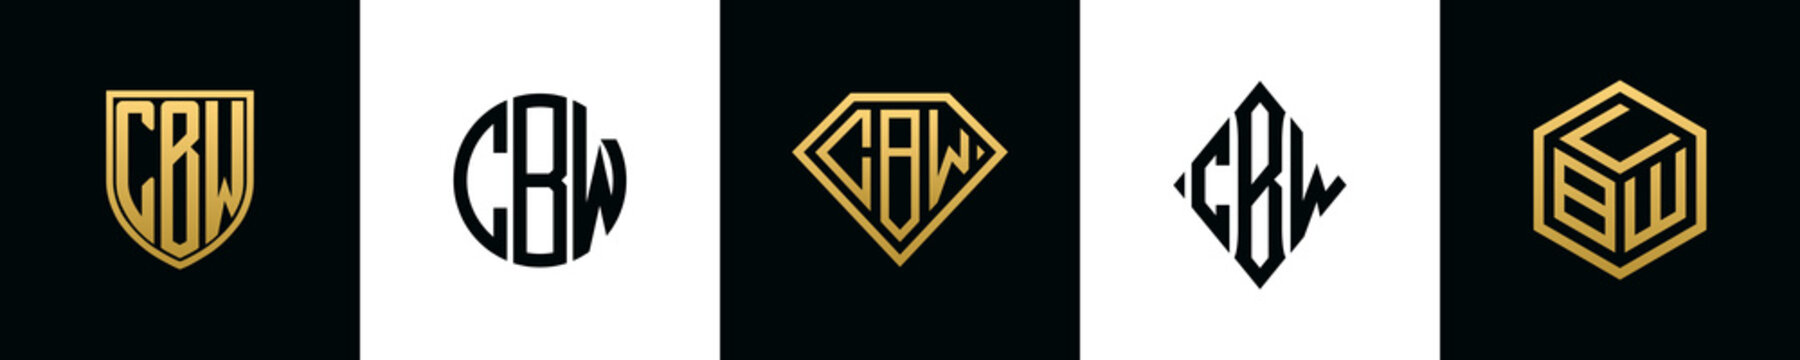 Initial letters CBW logo designs Bundle